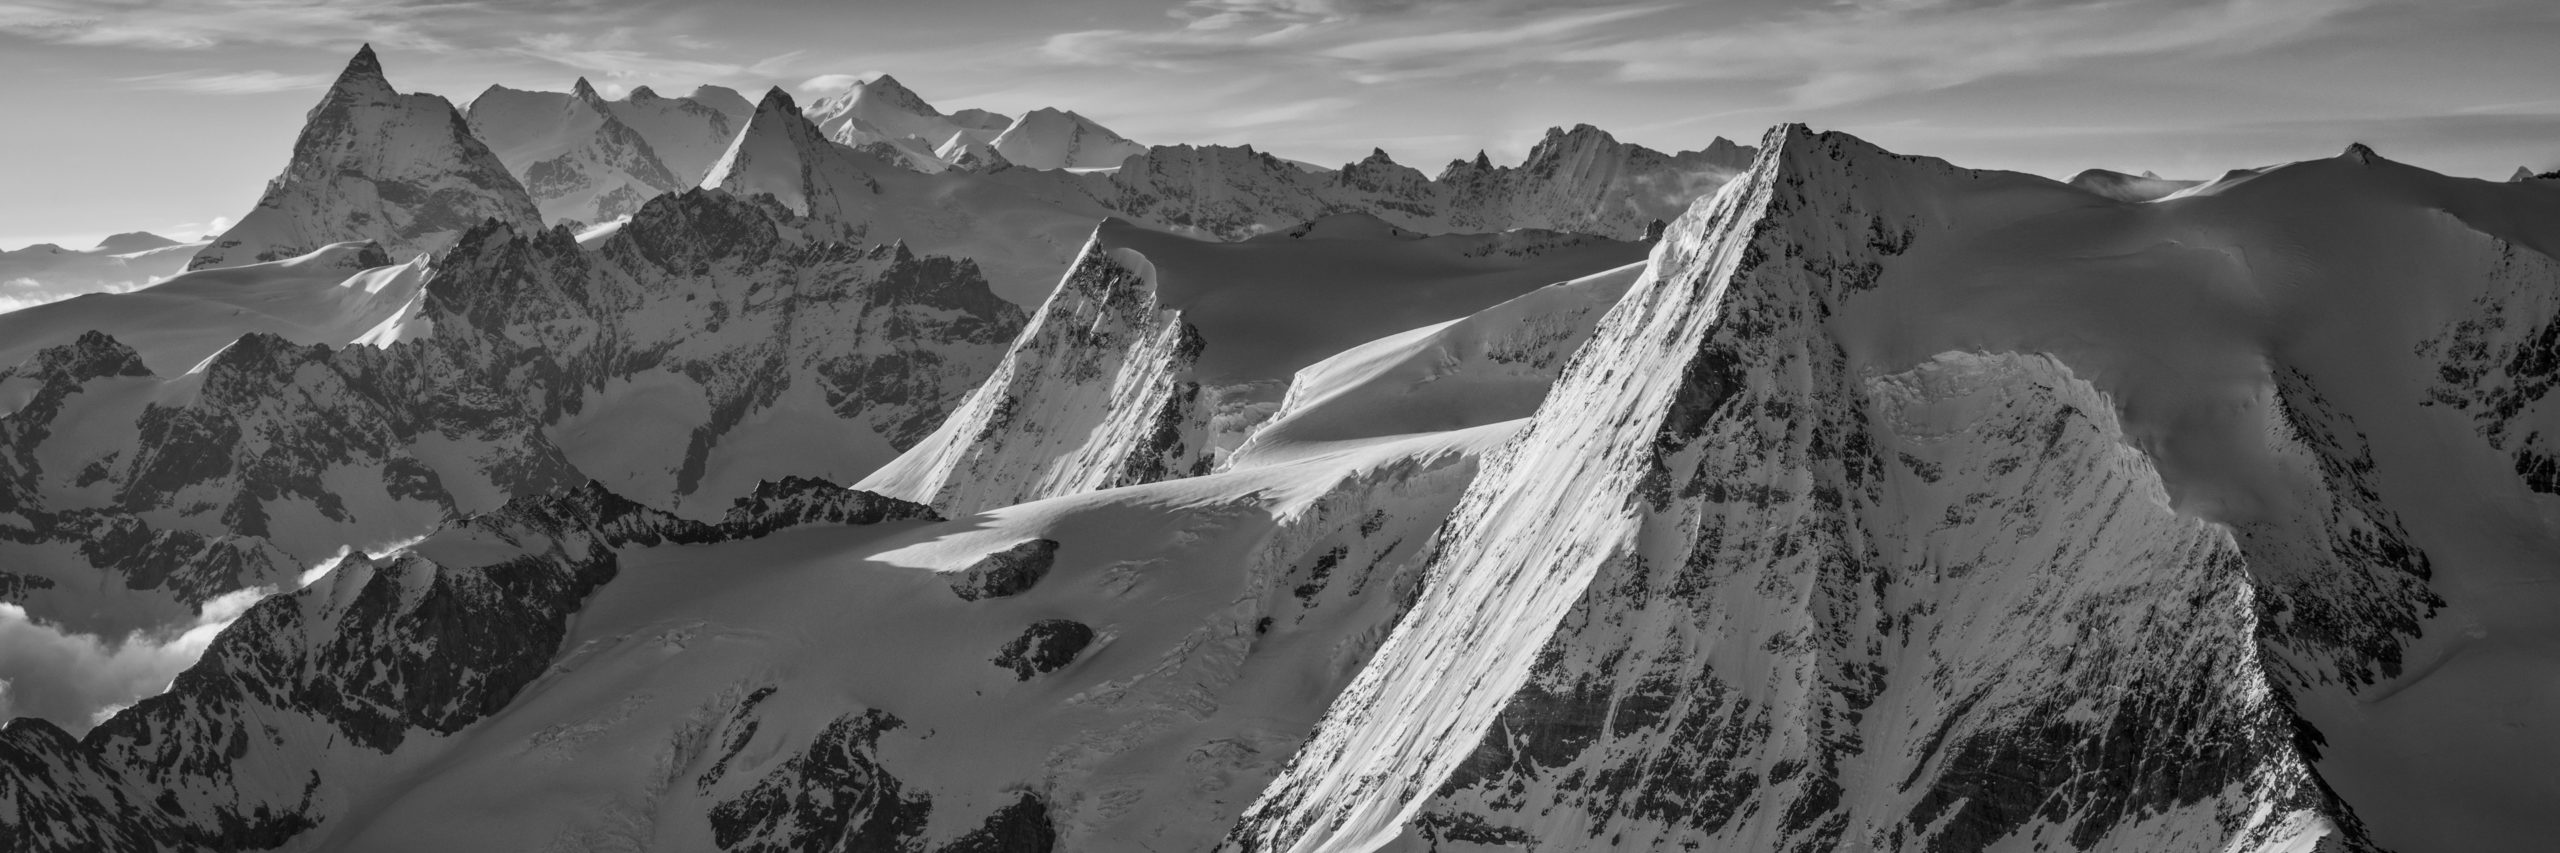 Fotos Panorama Schweizer Alpen Wallis - Panoramafoto mont blanc